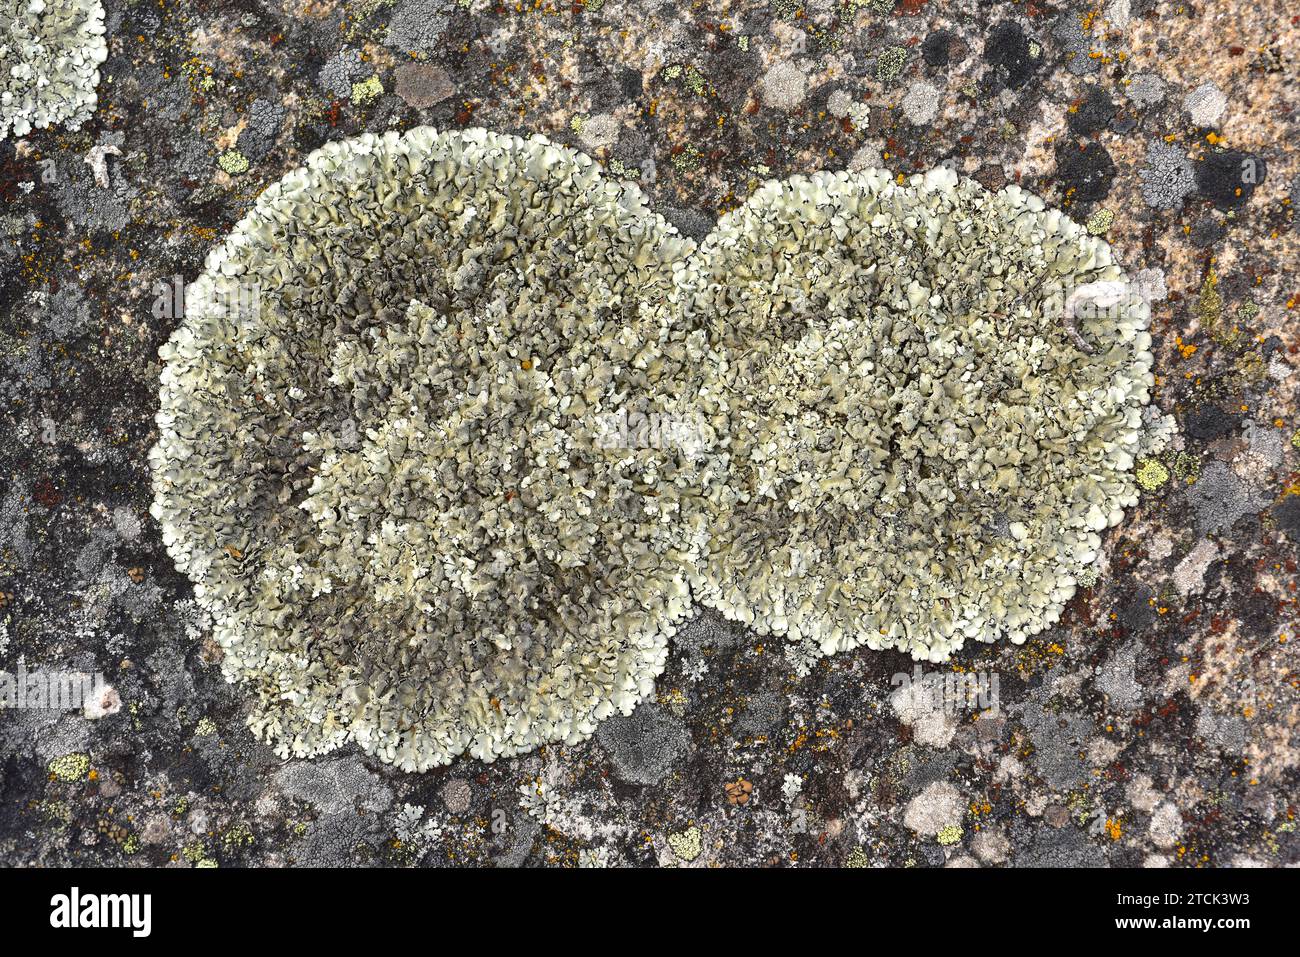 Parmelia caperata or Flavoparmelia caperata is a foliose lichen with sorelia. This photo was taken in Arribes del Duero Natural Park, Zamora province, Stock Photo